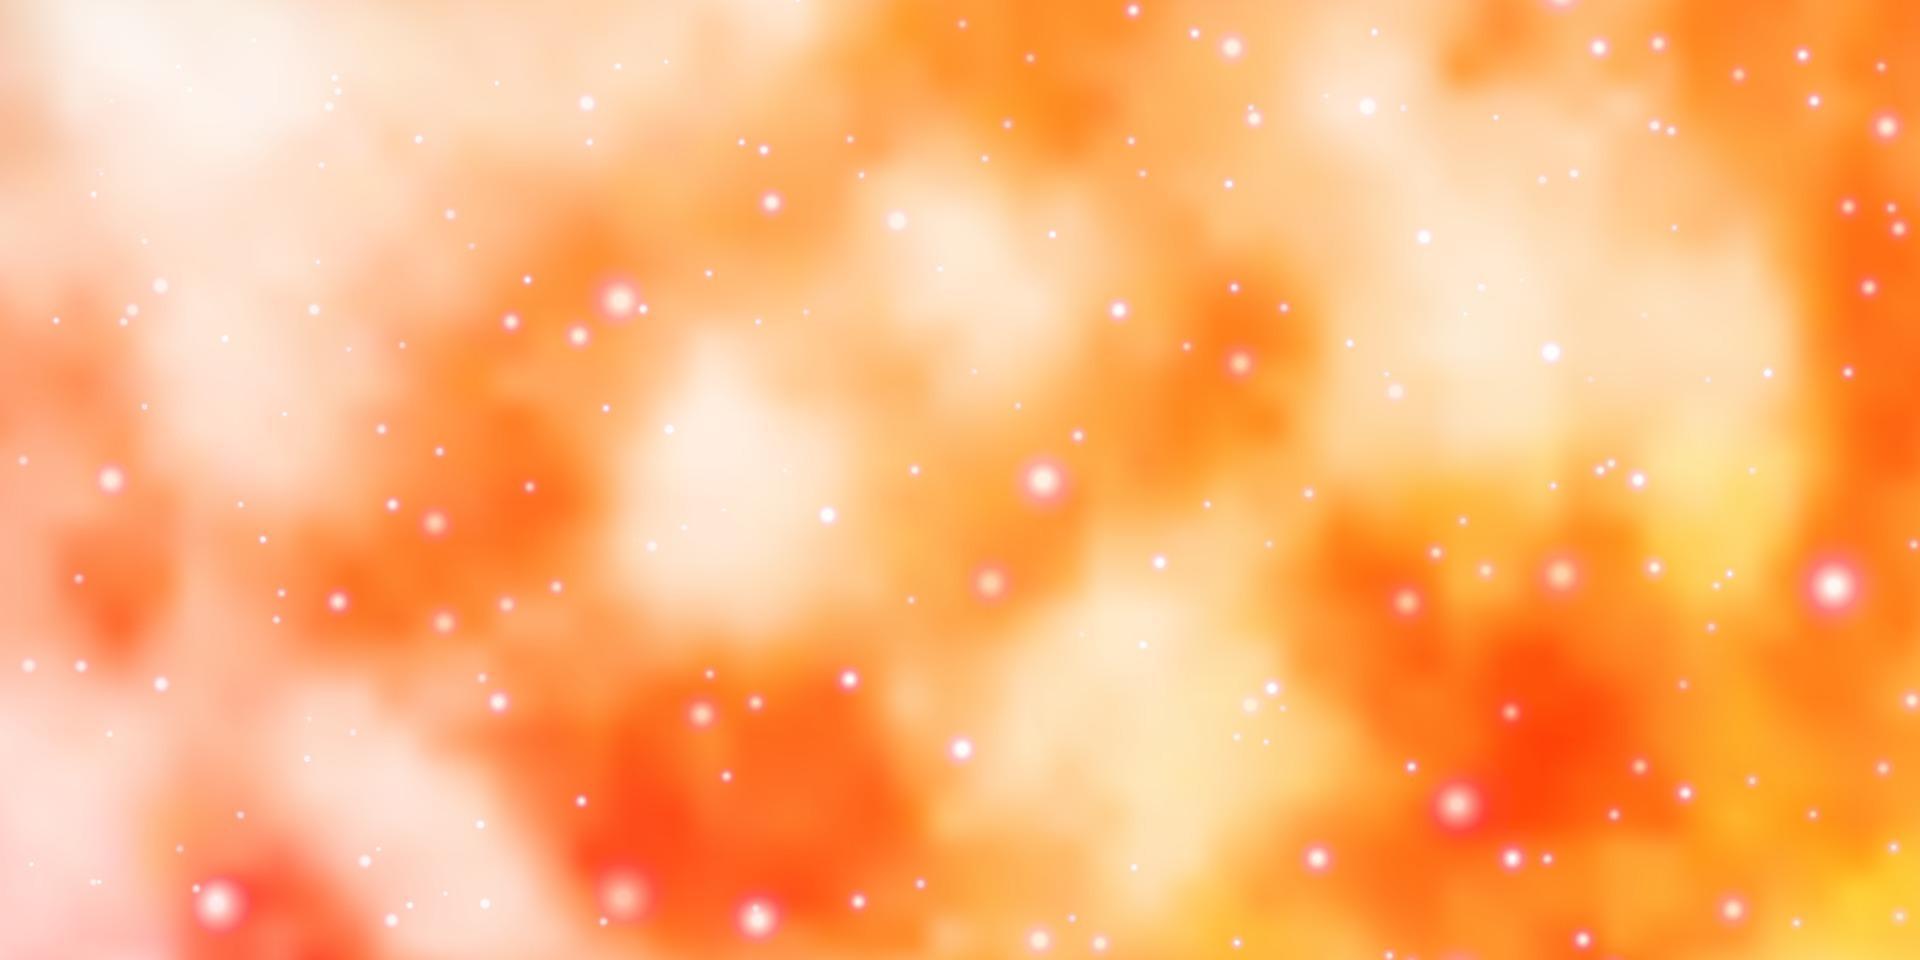 fond de vecteur orange clair avec de petites et grandes étoiles.